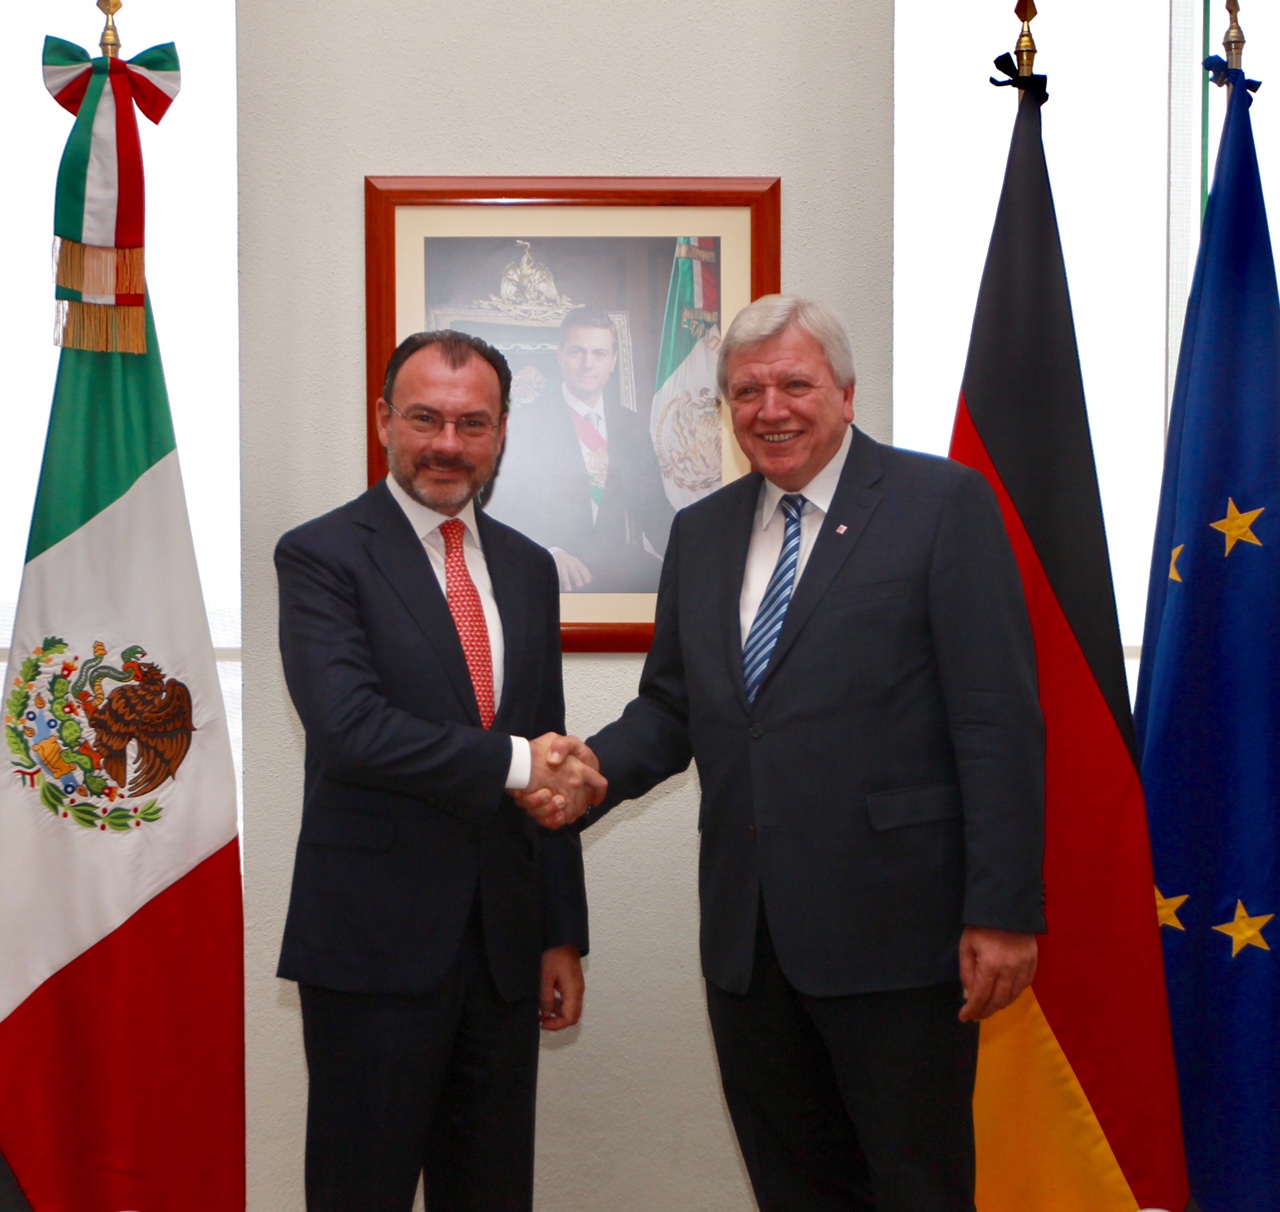 Recibe Secretario Luis Videgaray al Ministro-Presidente del estado federado de Hesse, Alemania, Volker Bouffier